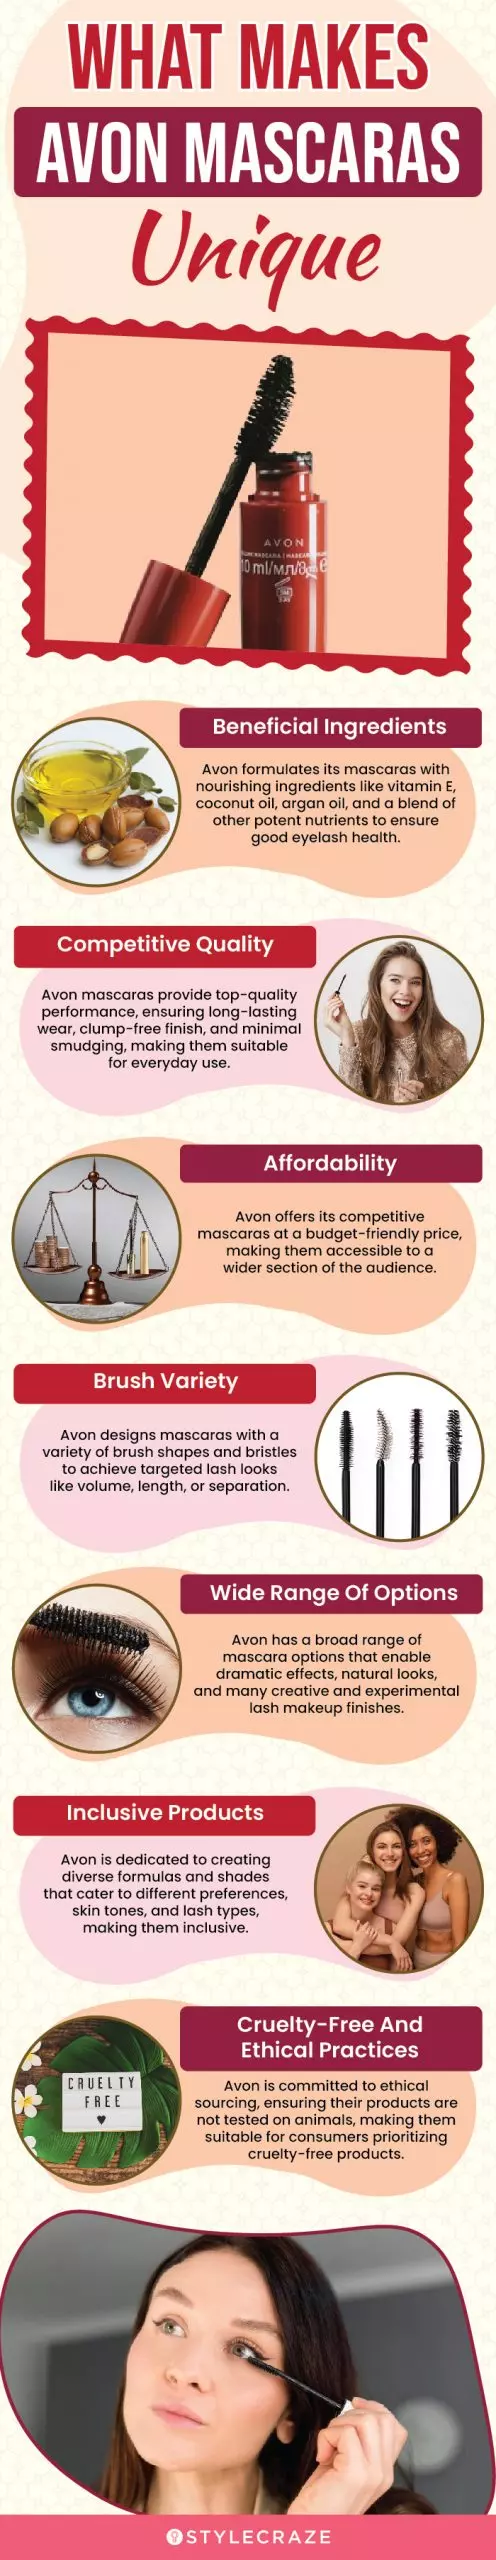 What Makes Avon Mascaras Unique (infographic)